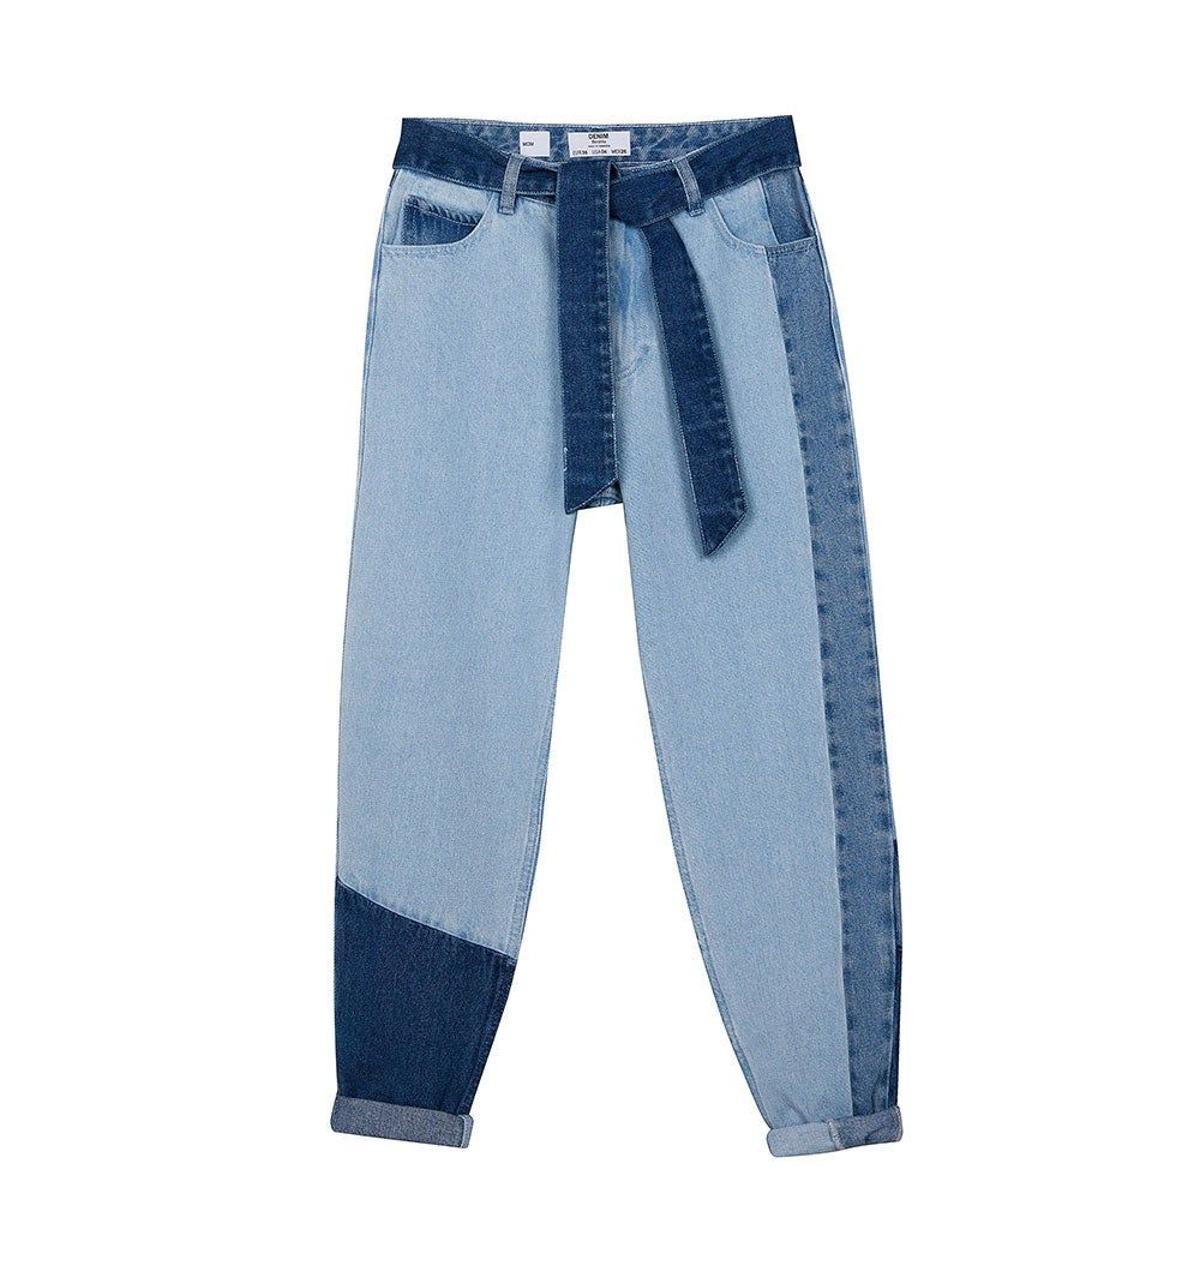 Jeans 'mom fit con contrastes de Bershka. (Precio: 29,99 euros. Precio rebajado: 17,99 euros)